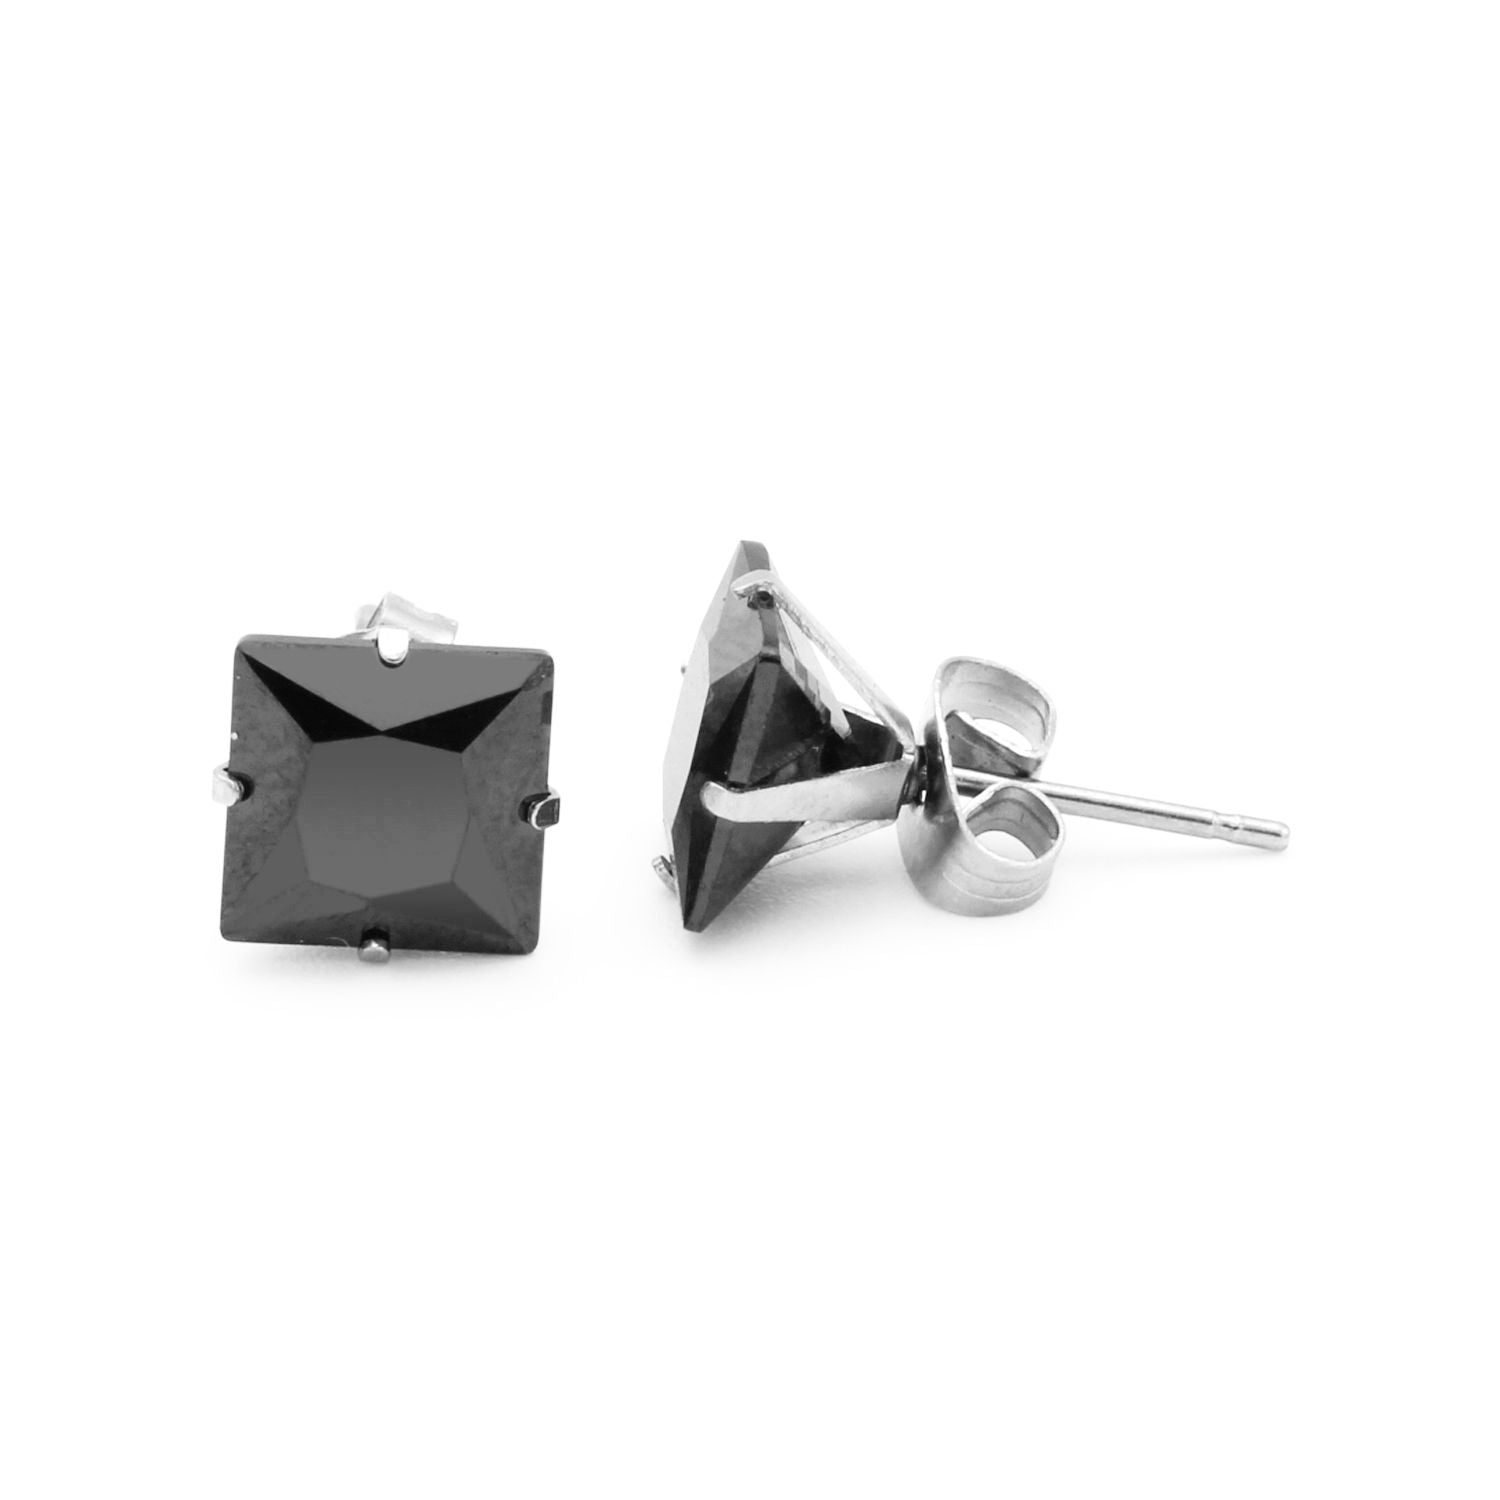 Cubic Zirconia Square Stud Earrings Stainless Steel Black Jewelry Men Women